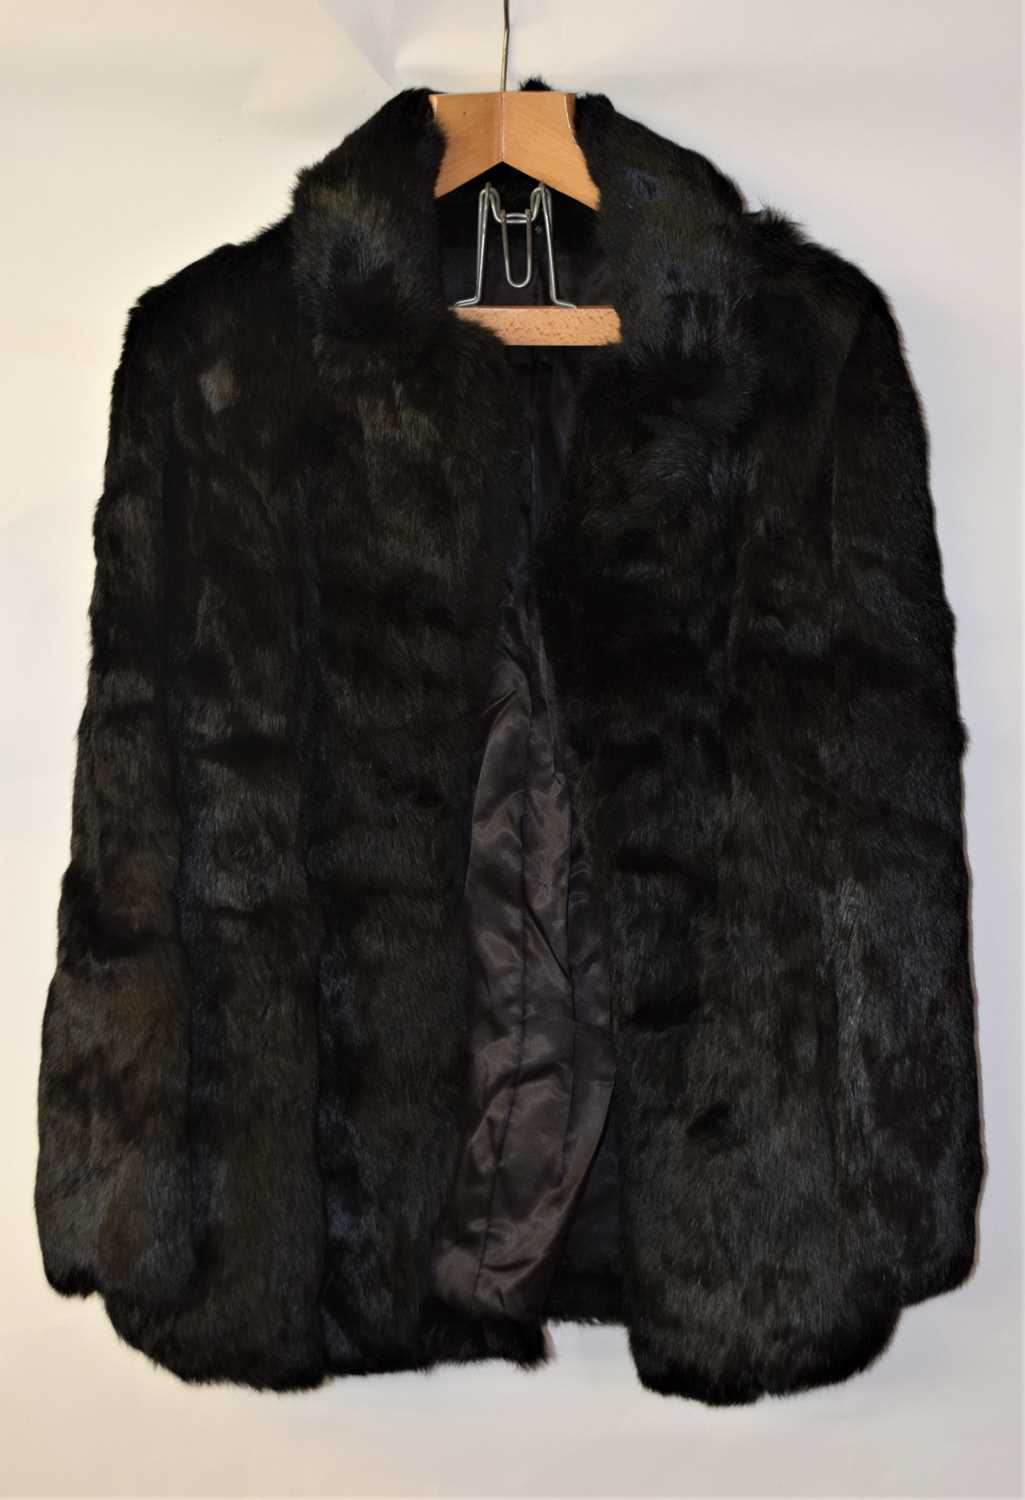 A lady's black rabbit fur jacket